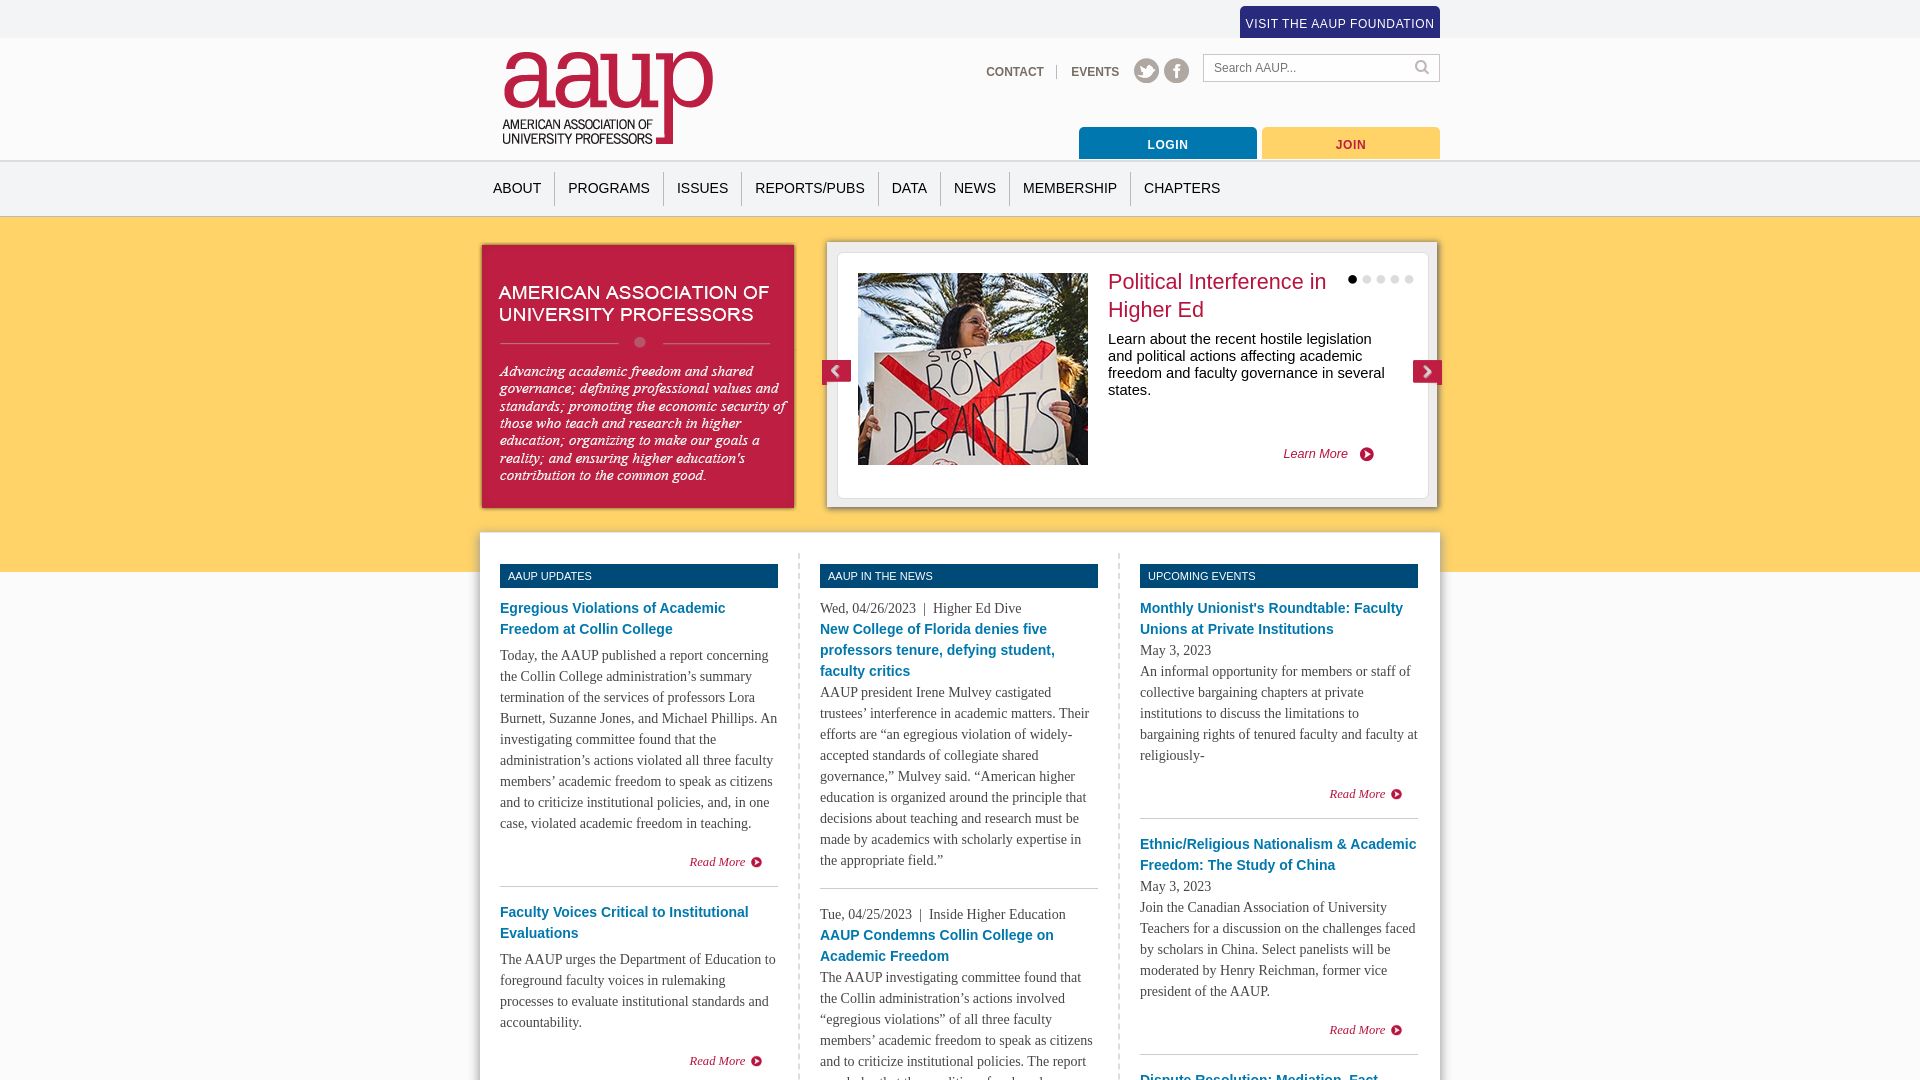 Website status aaup.org is   ONLINE